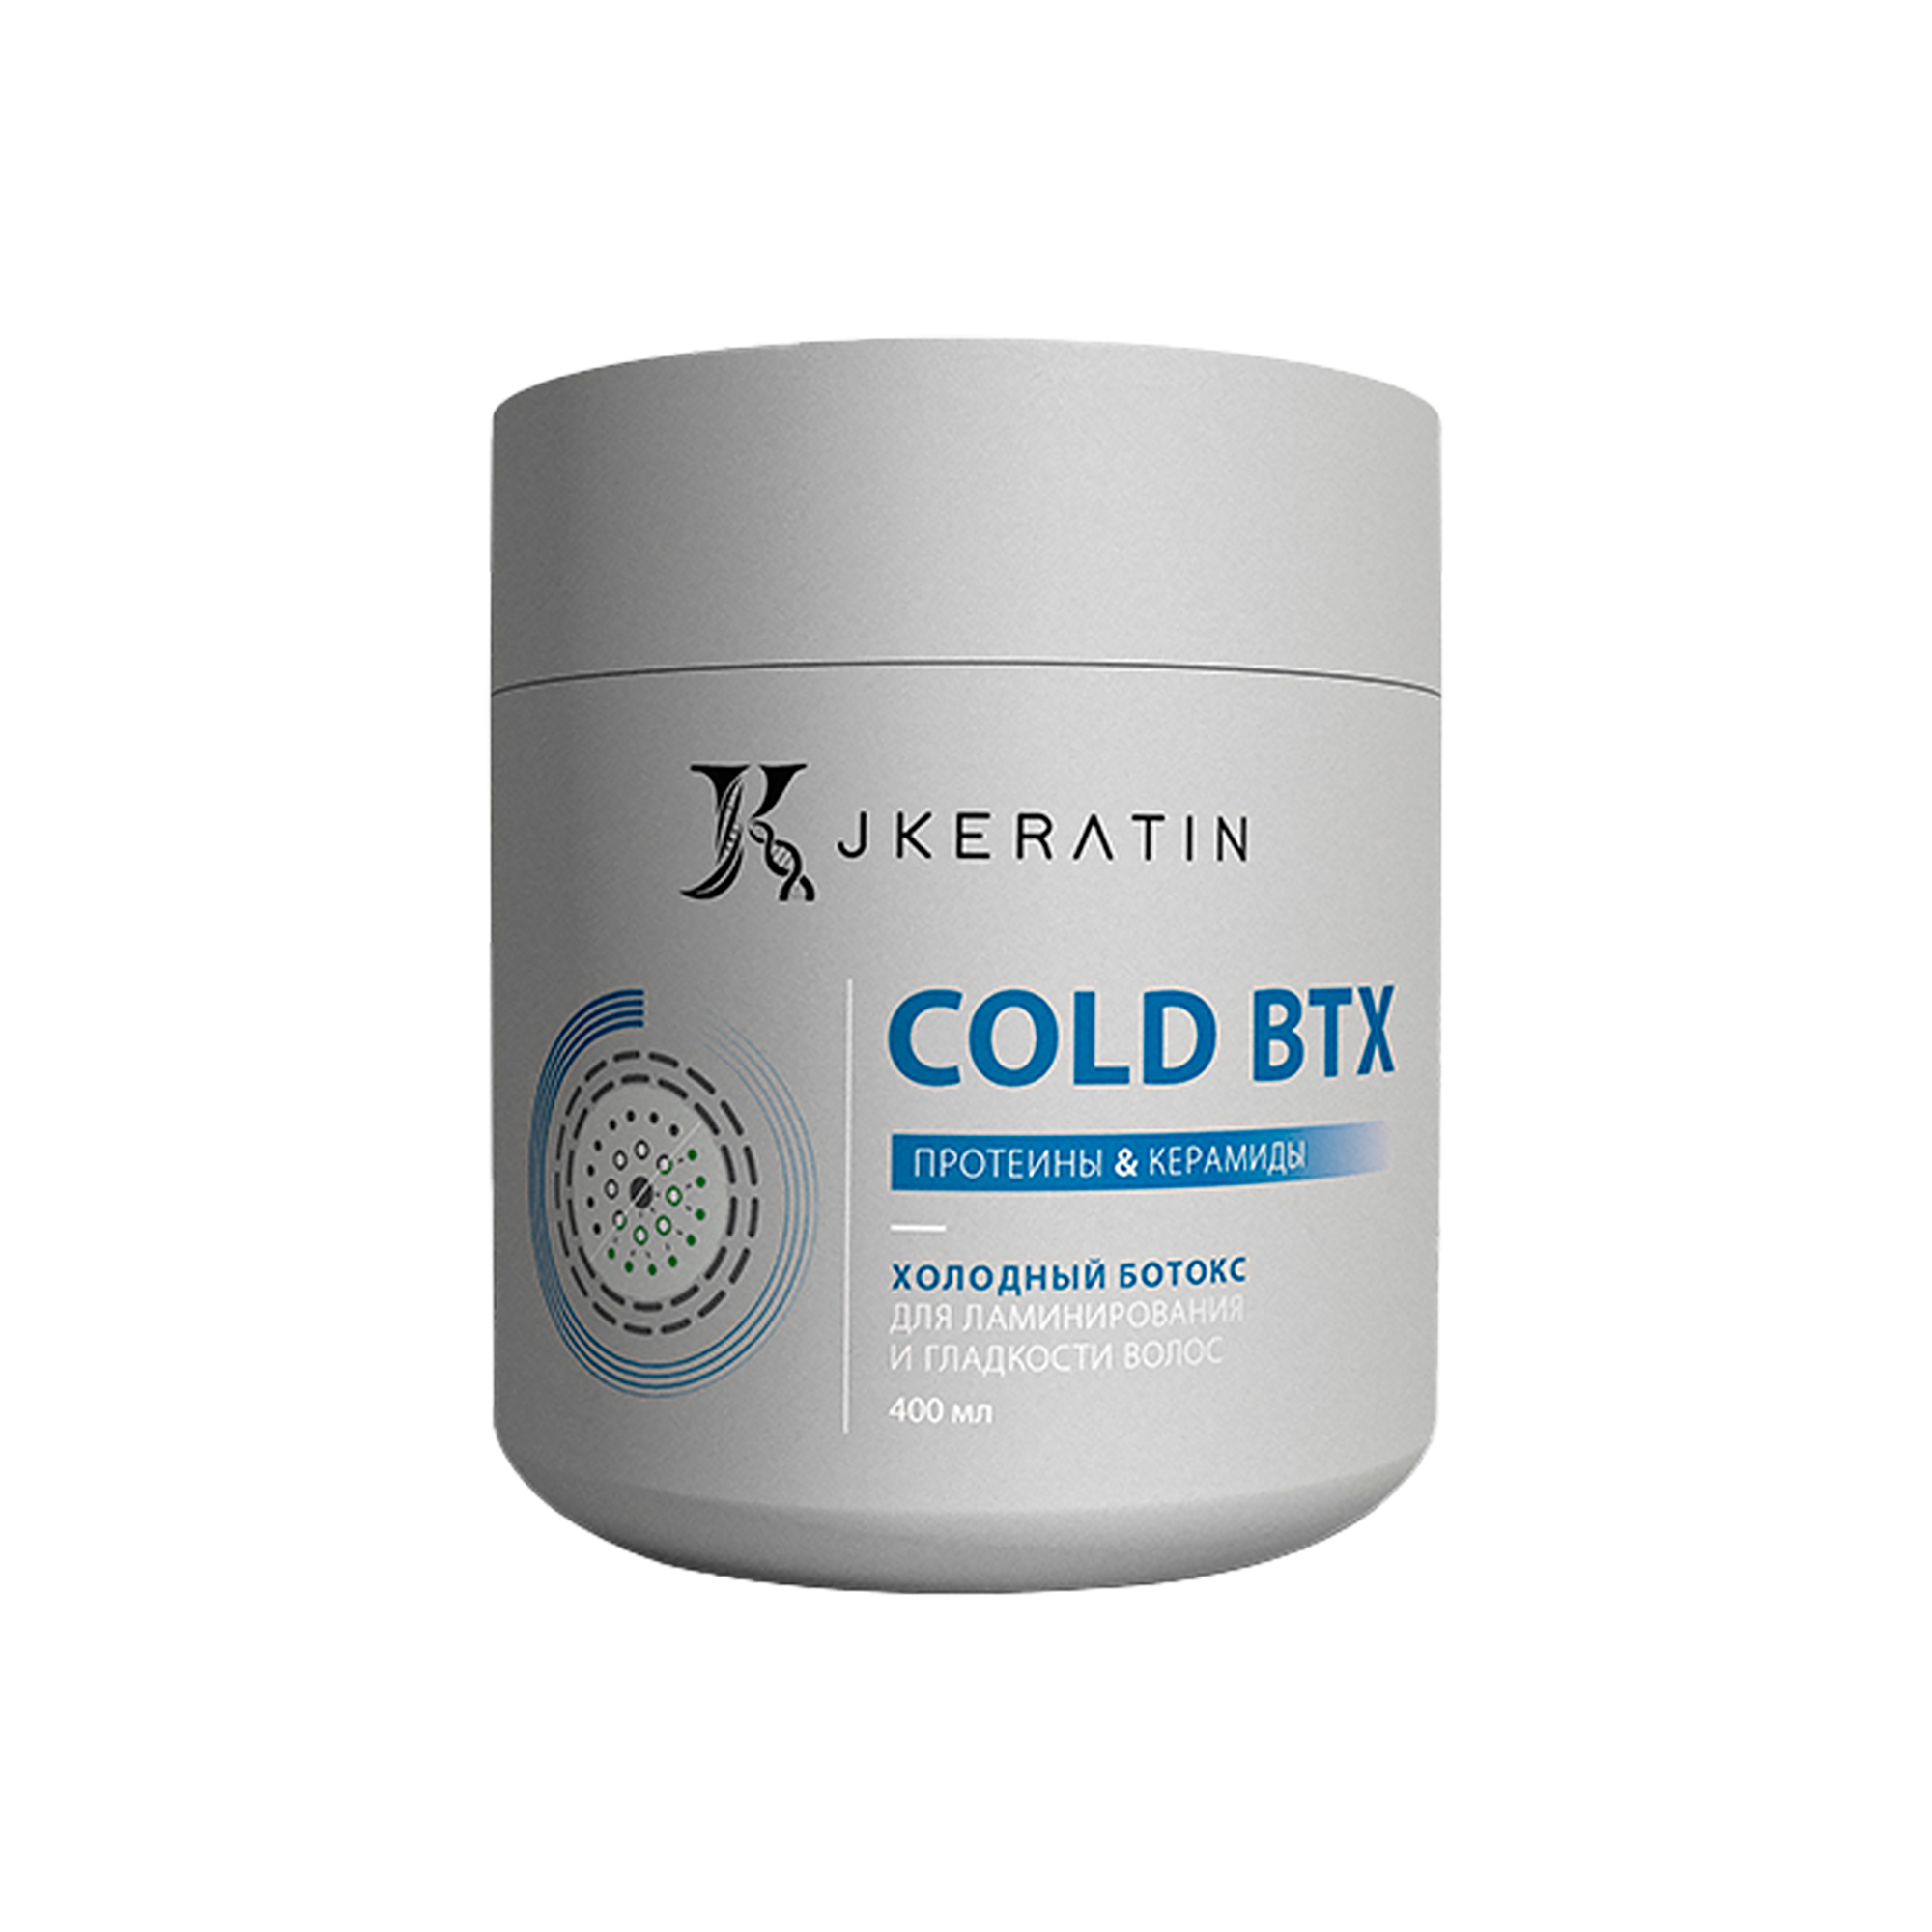 Холодный ботокс JKeratin Cold BTX для ламинирования и гладкости волос, 400 мл